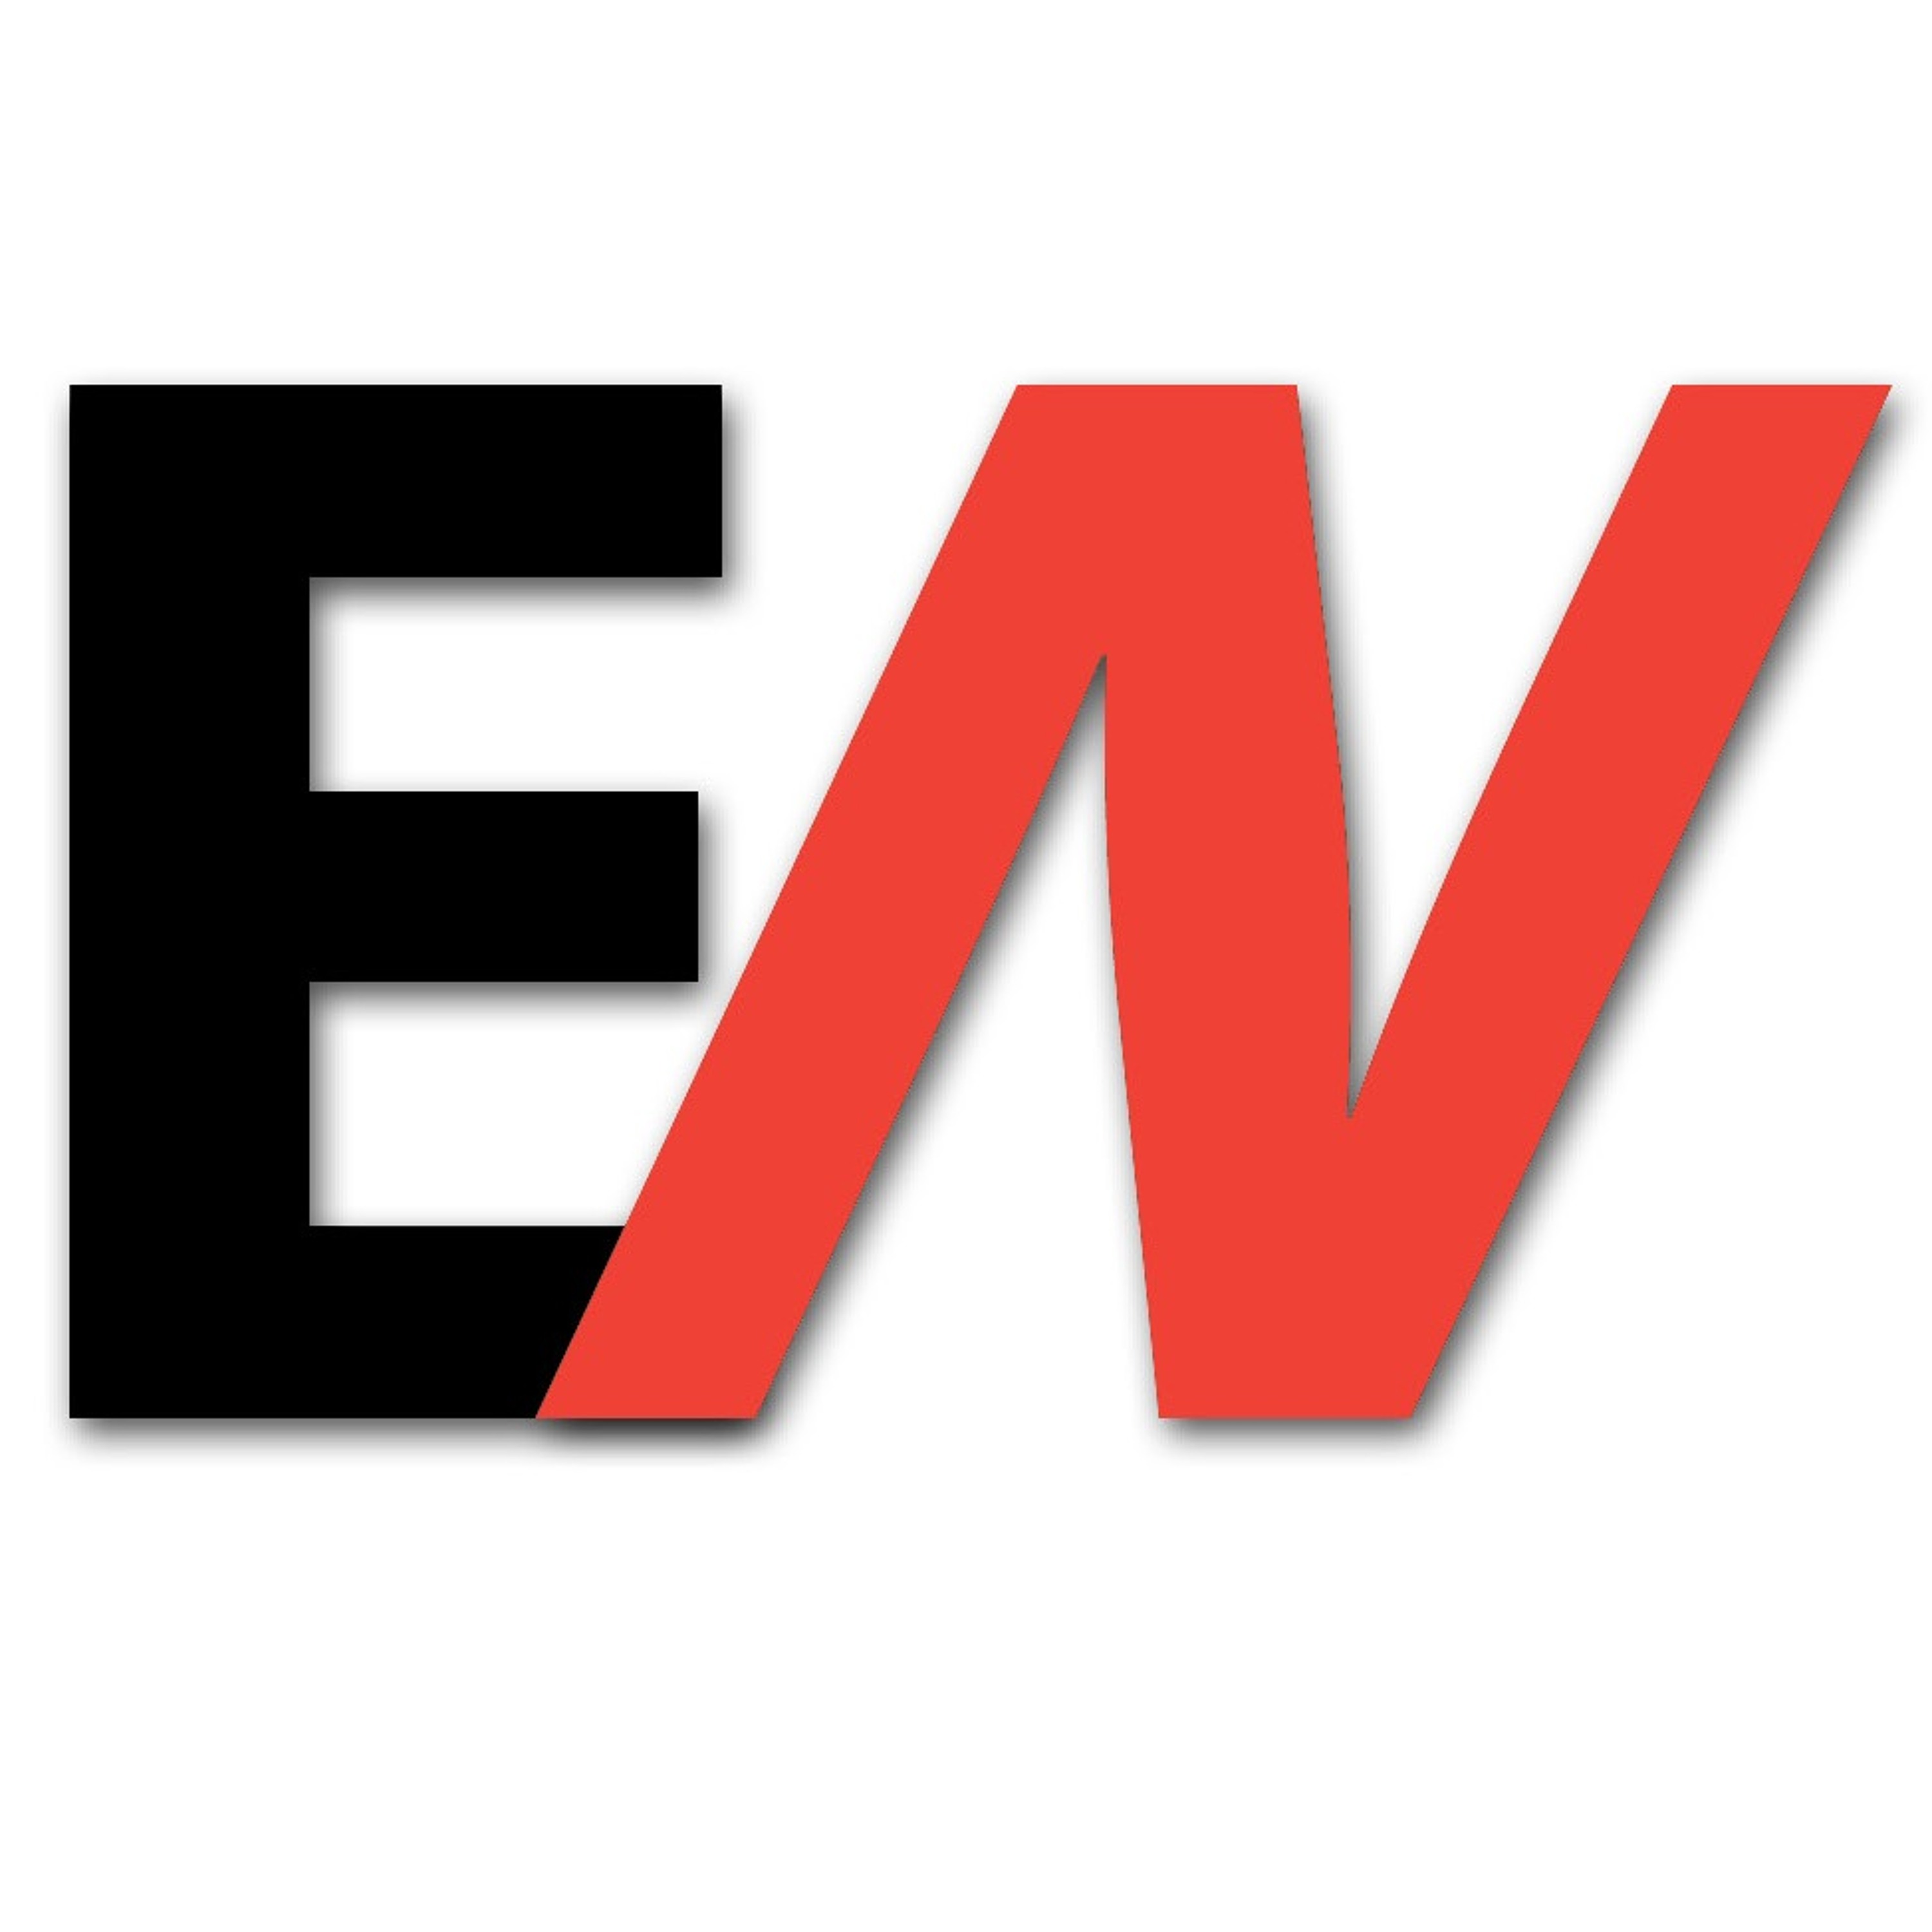 Ep. 01 - Aug. 26, 2015: EdNext vs. PDK Poll